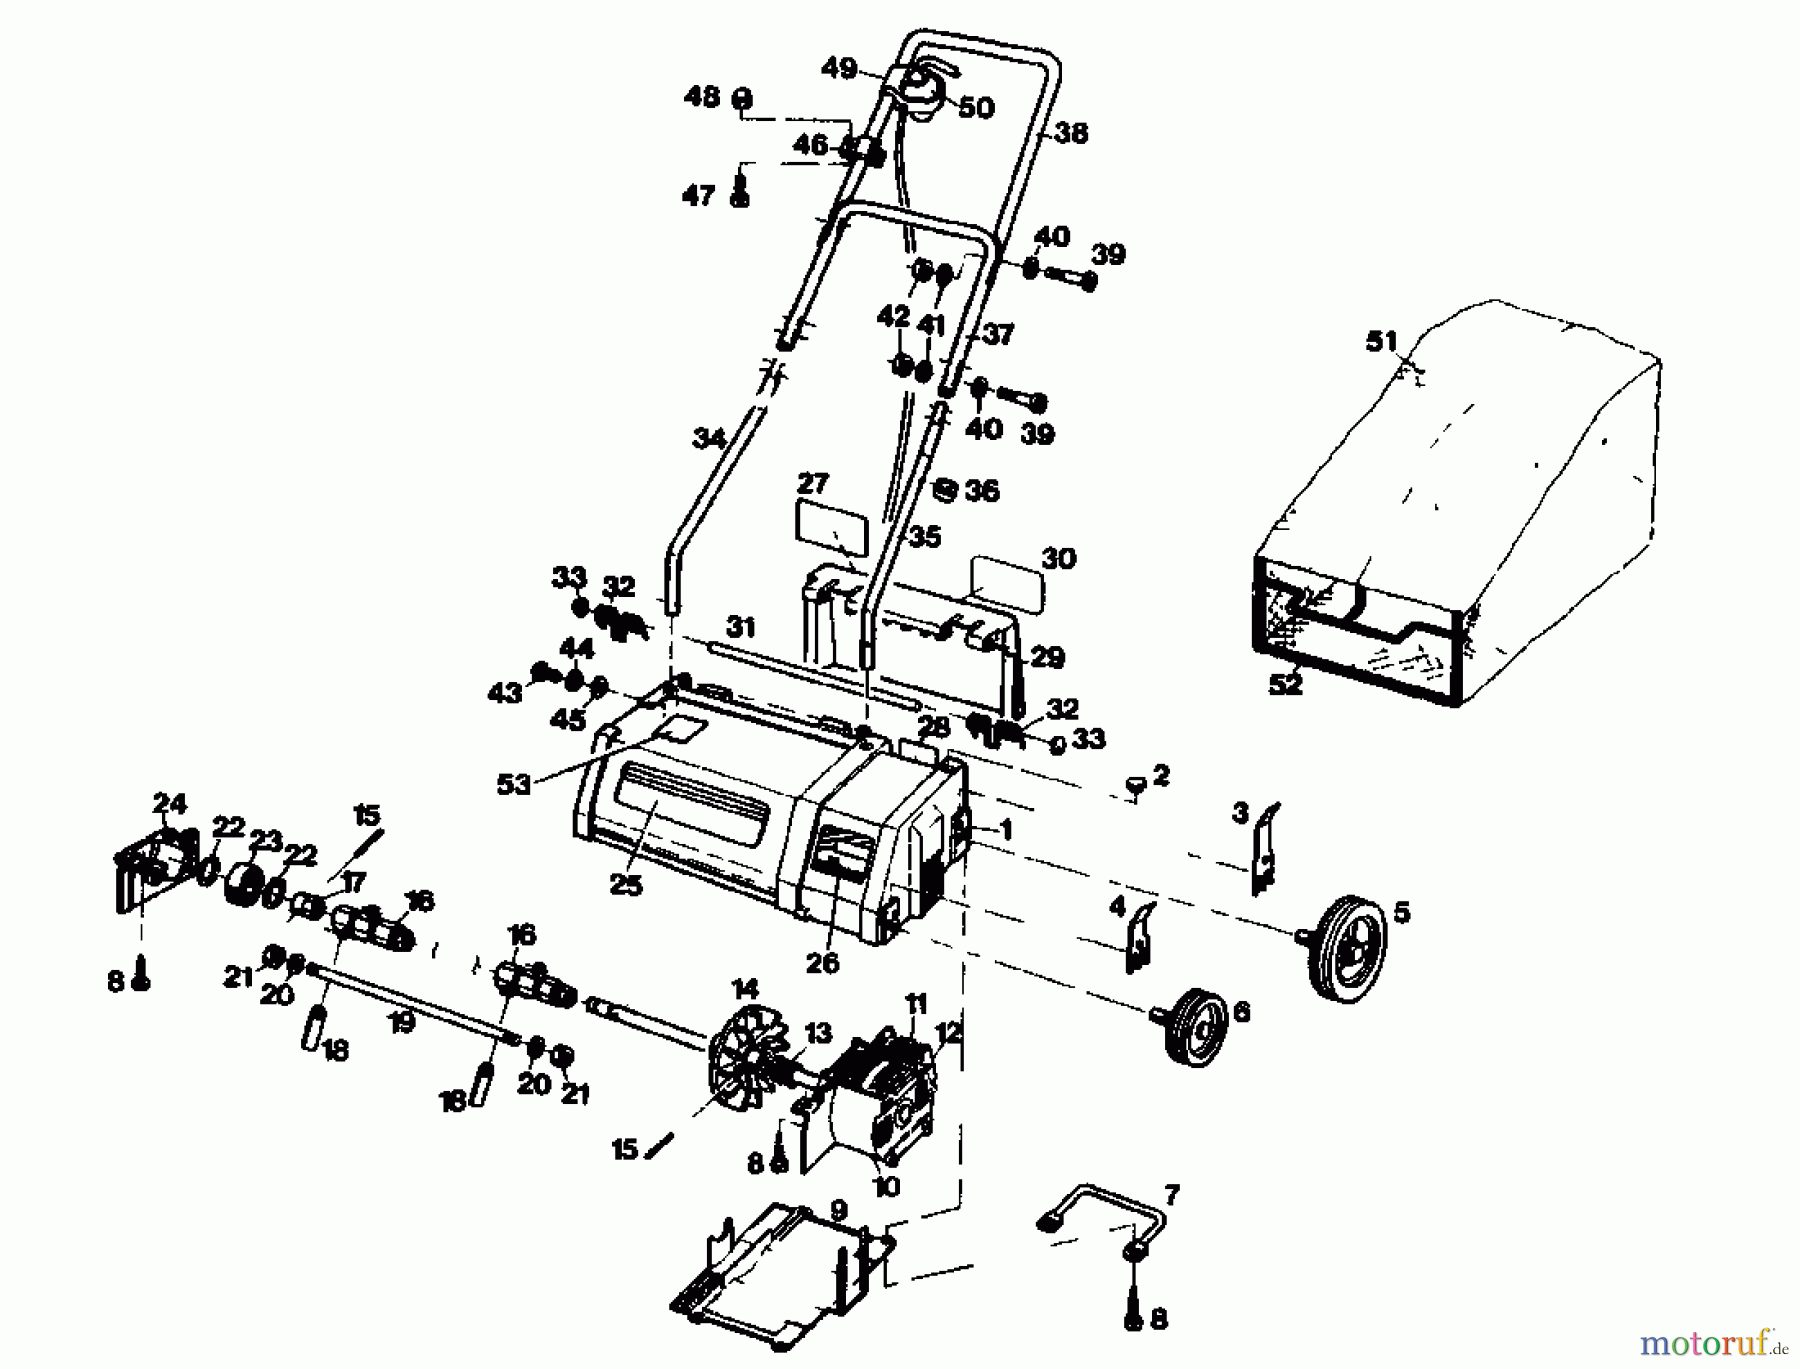  Gutbrod Scarificateur électrique VE 32 02890.02  (1985) Machine de base